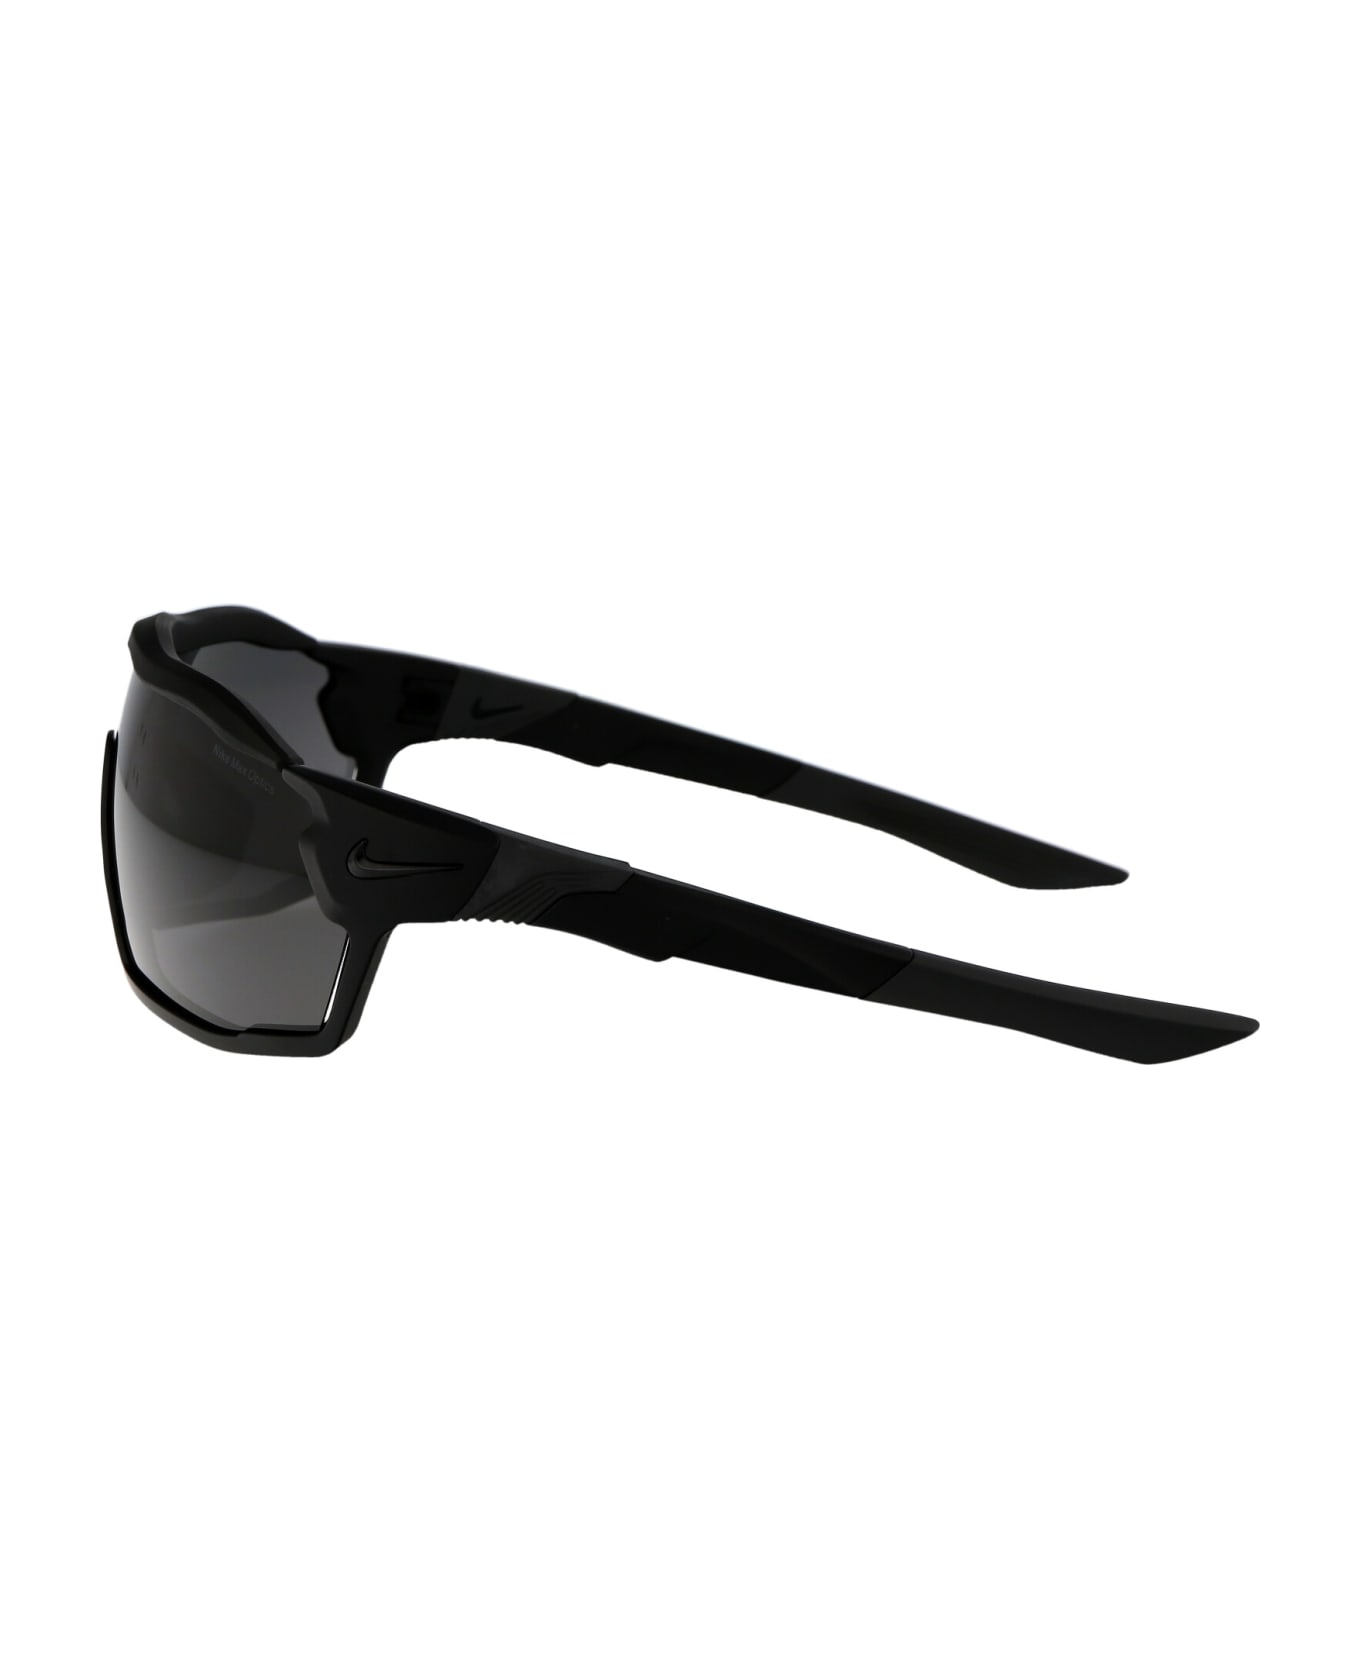 Nike Show X Rush Sunglasses - 010 DARK GREY MATTE BLACK サングラス